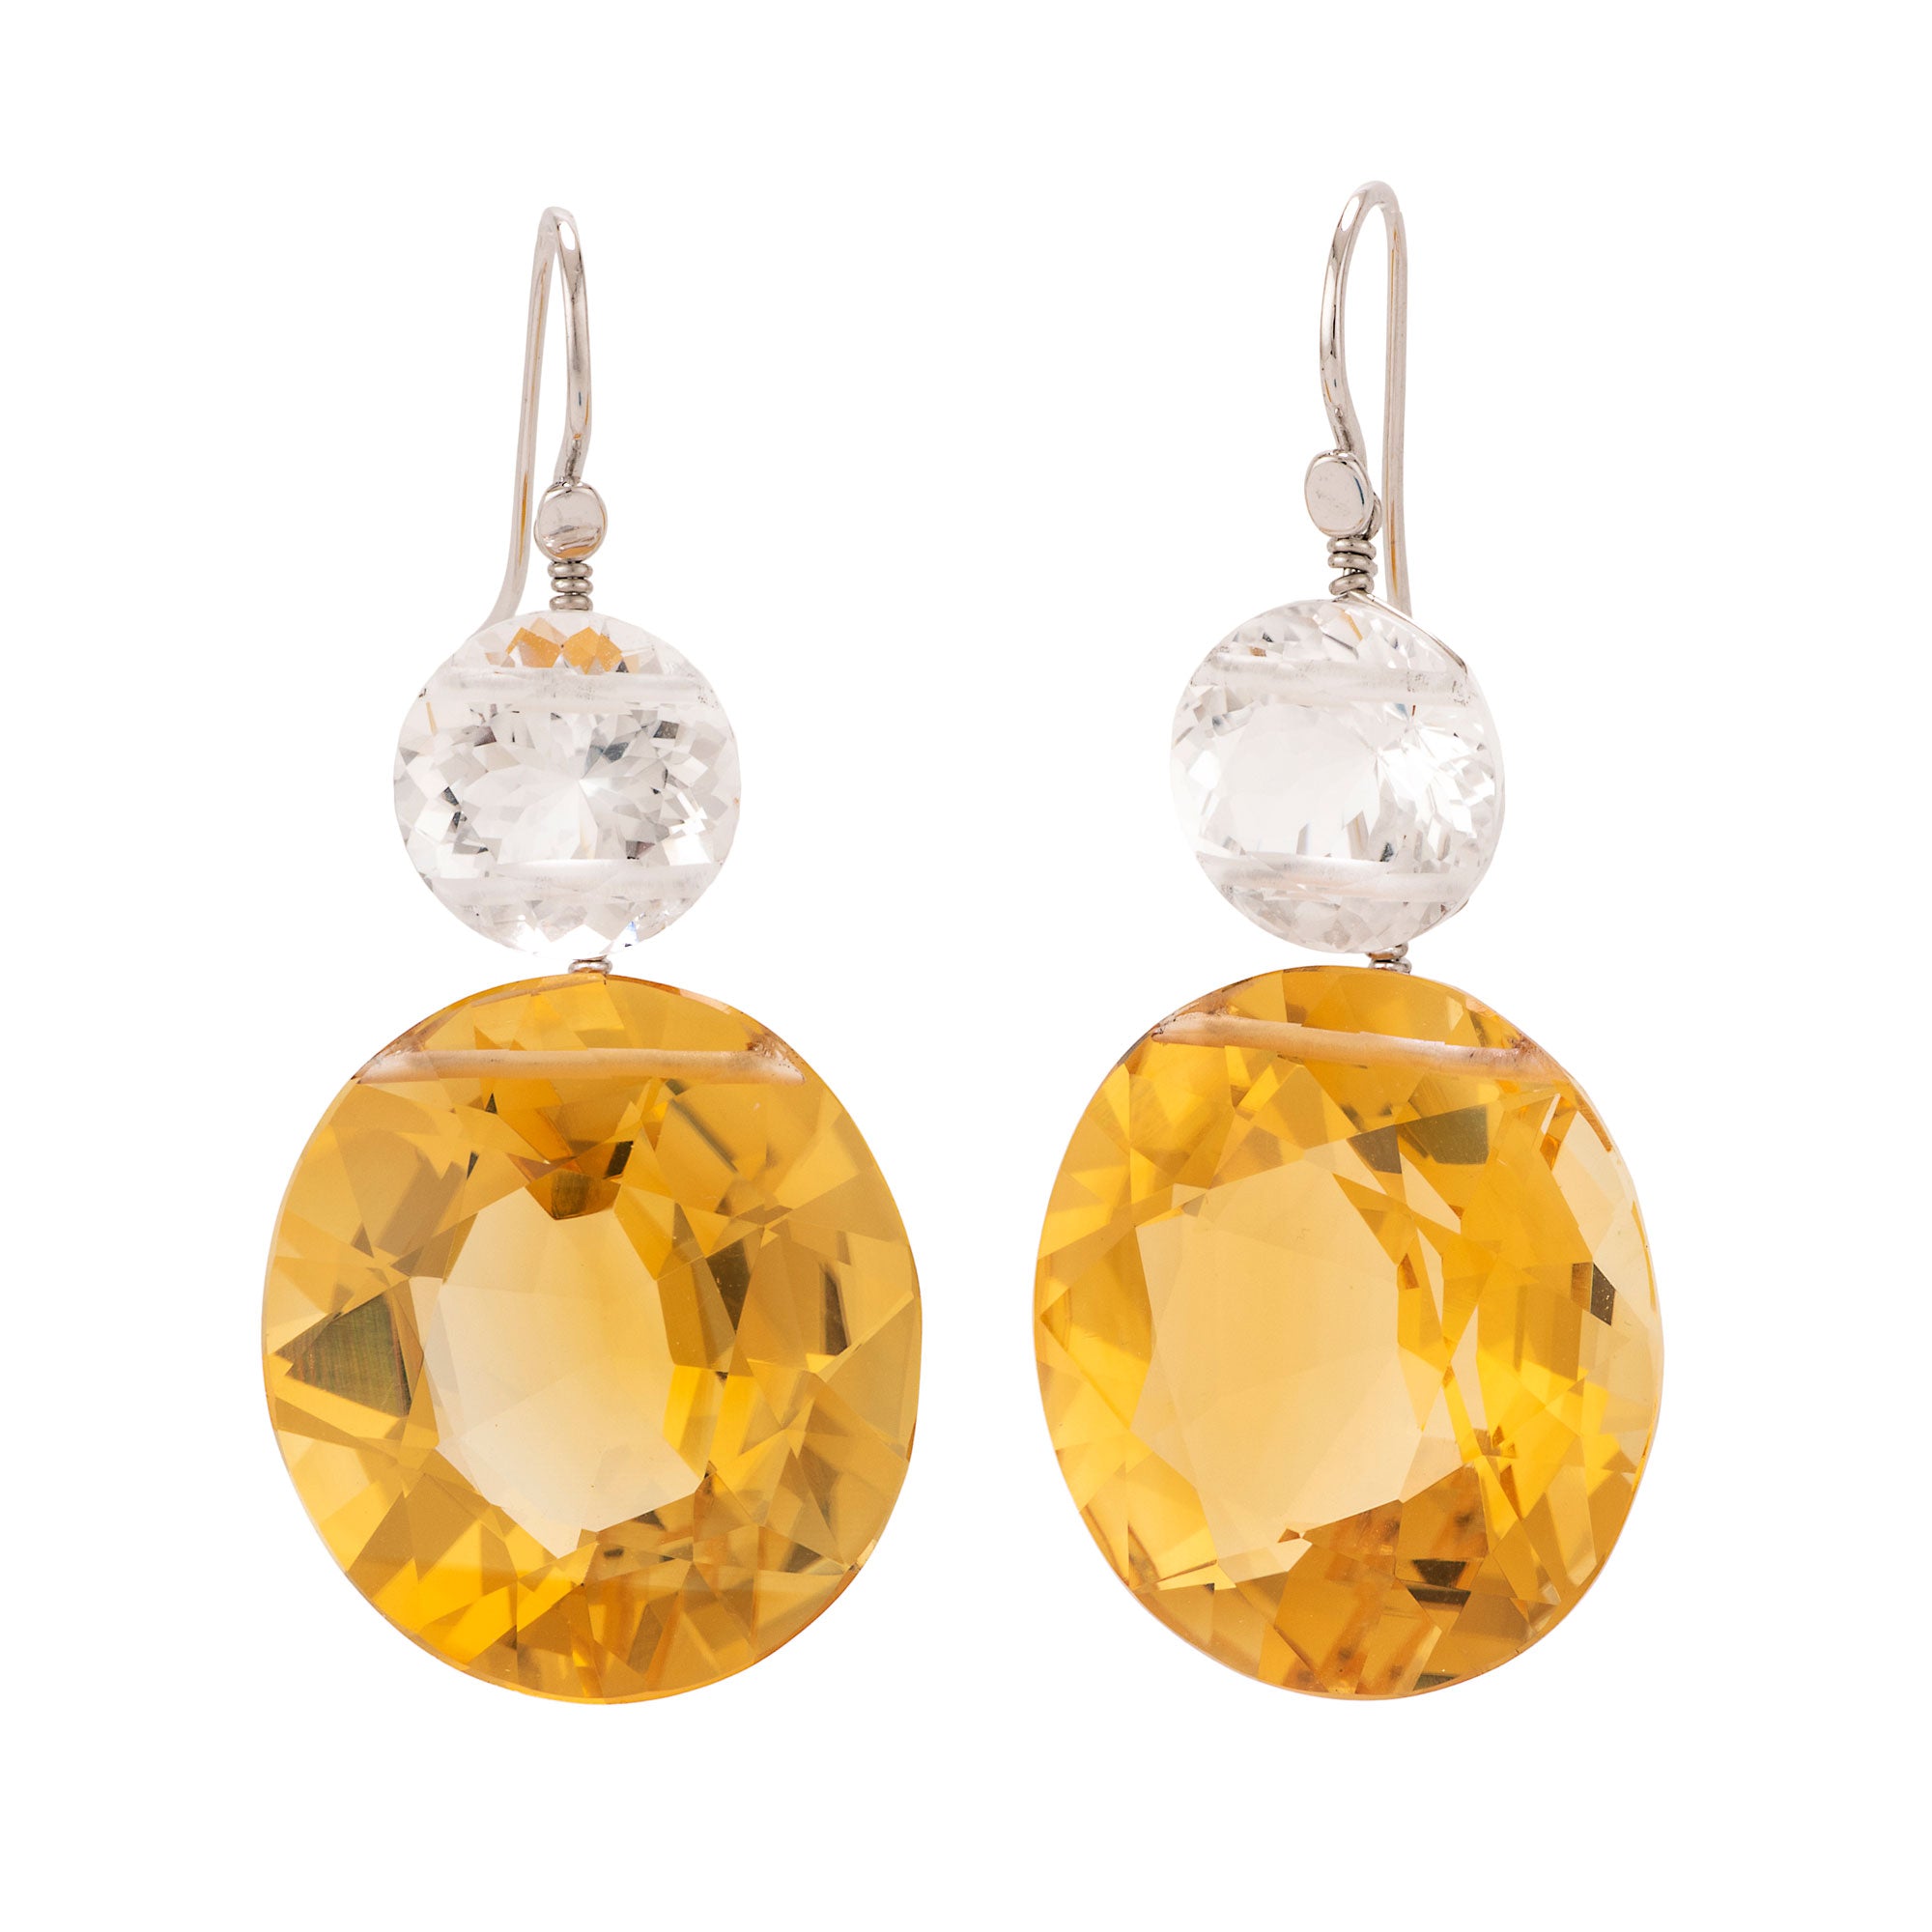 Oval II citrine earrings